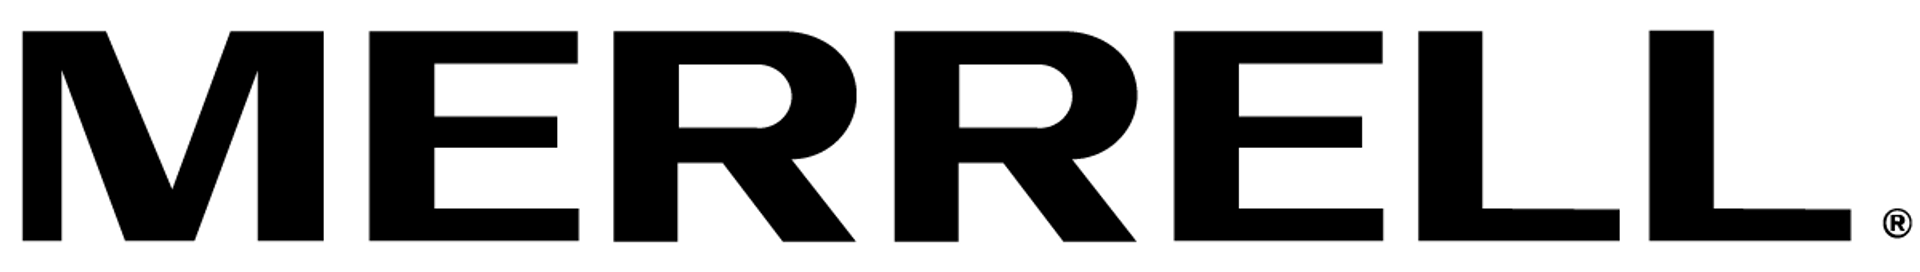 MERRELL logo de circulaires